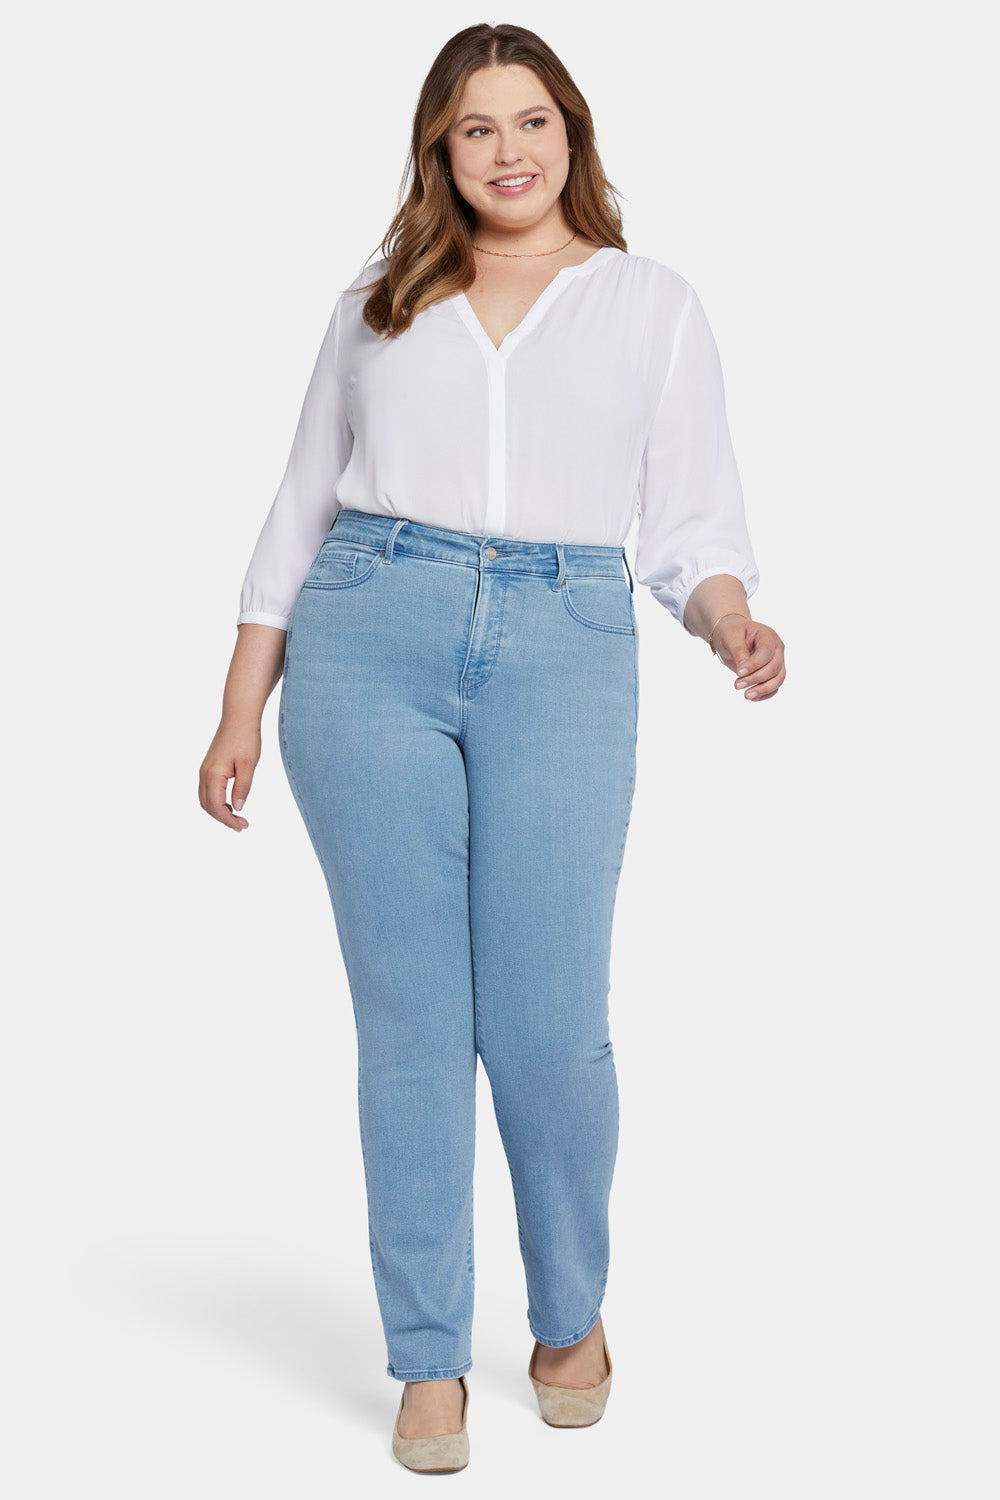 Marilyn Straight Jeans In Plus Size - Kingston